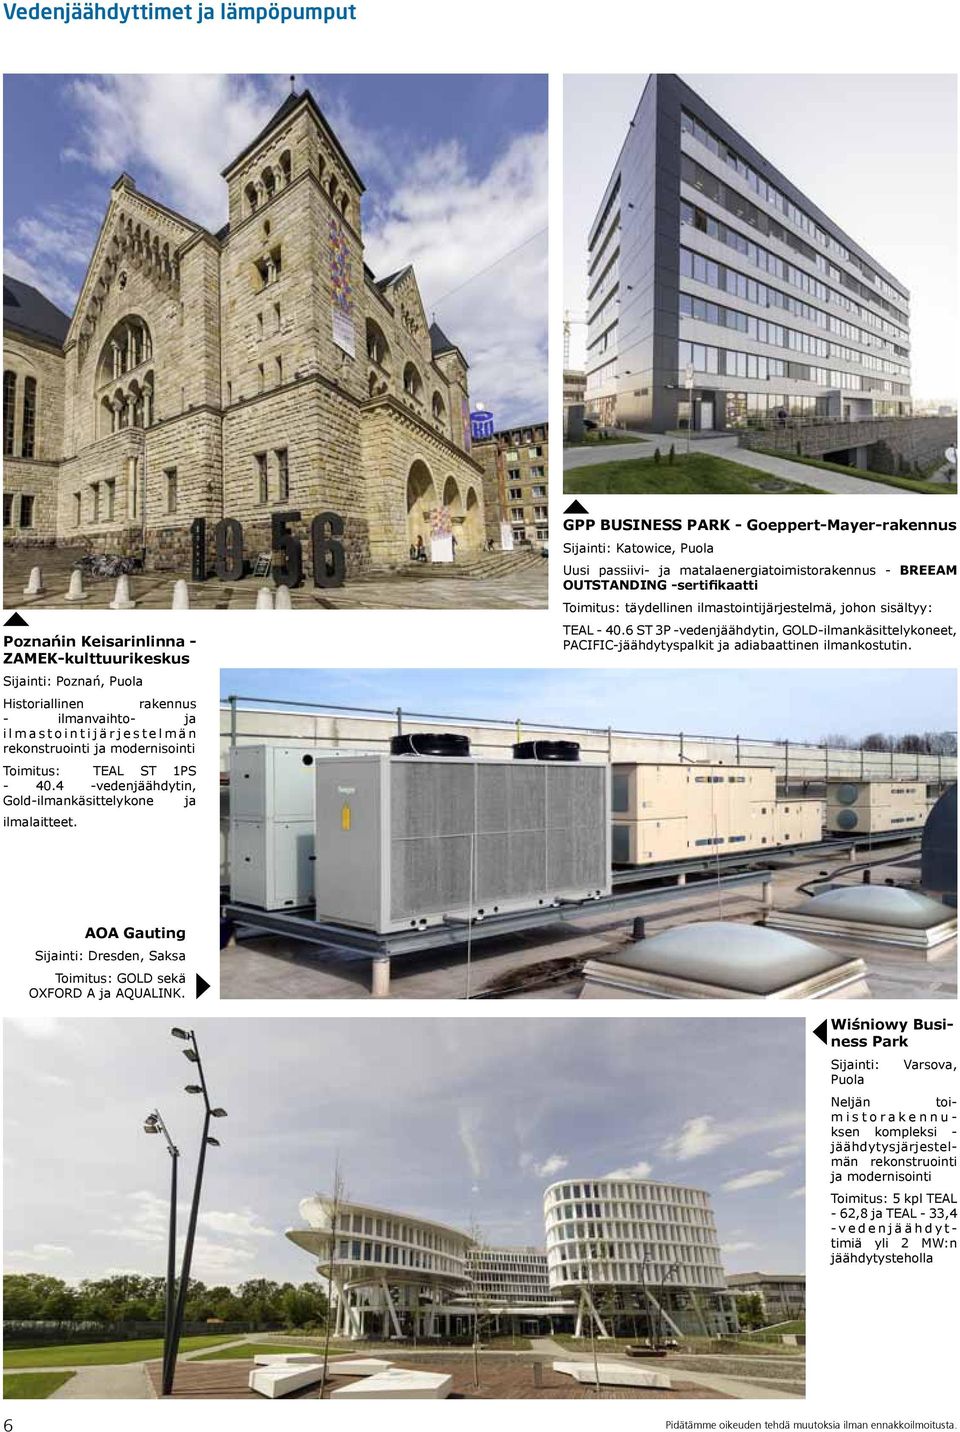 GPP BUSINESS PARK - Goeppert-Mayer-rakennus Sijainti: Katowice, Puola Uusi passiivi- ja matalaenergiatoimistorakennus - BREEAM OUTSTANDING -sertifikaatti Toimitus: täydellinen ilmastointijärjestelmä,